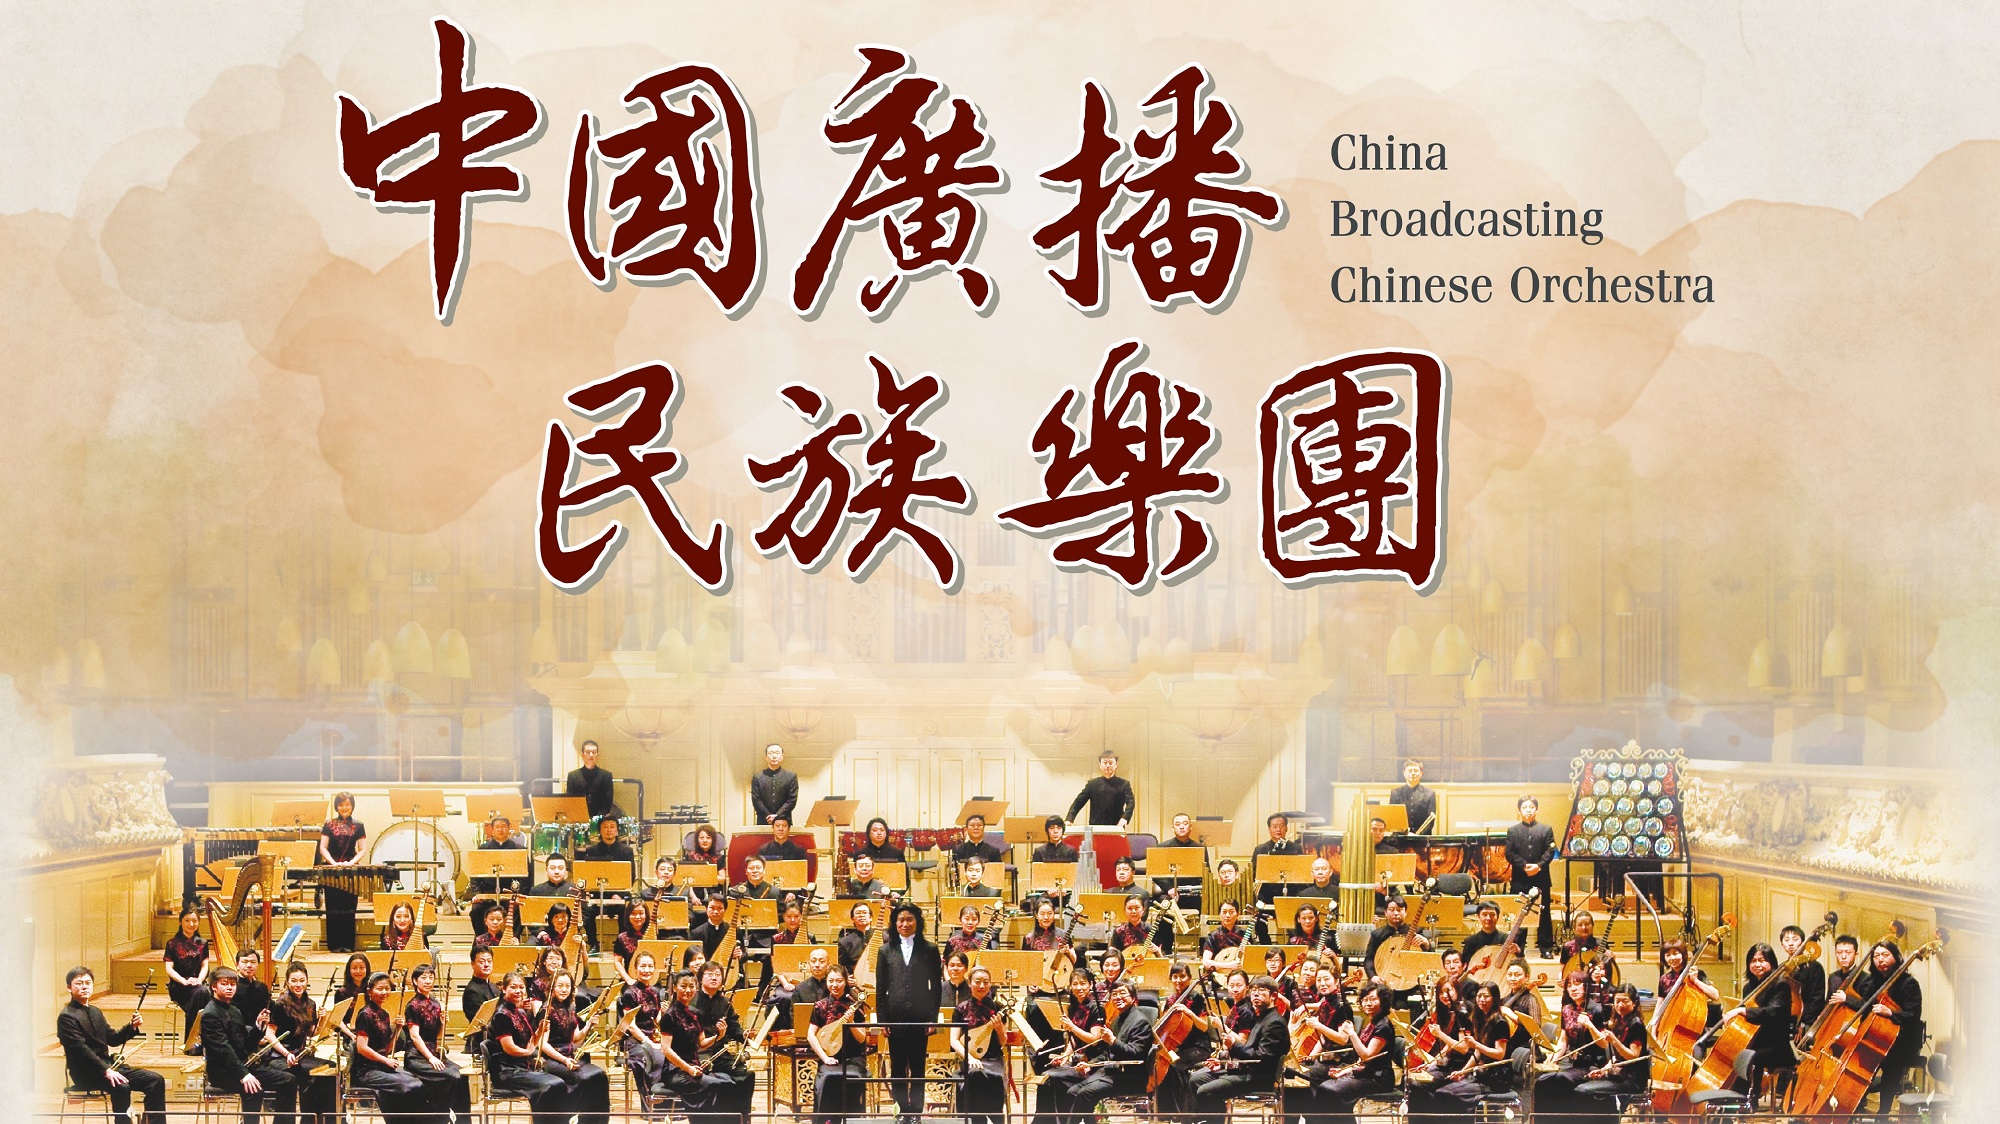 【文藝】中國廣播民族樂團 十月呈獻兩場精彩音樂會